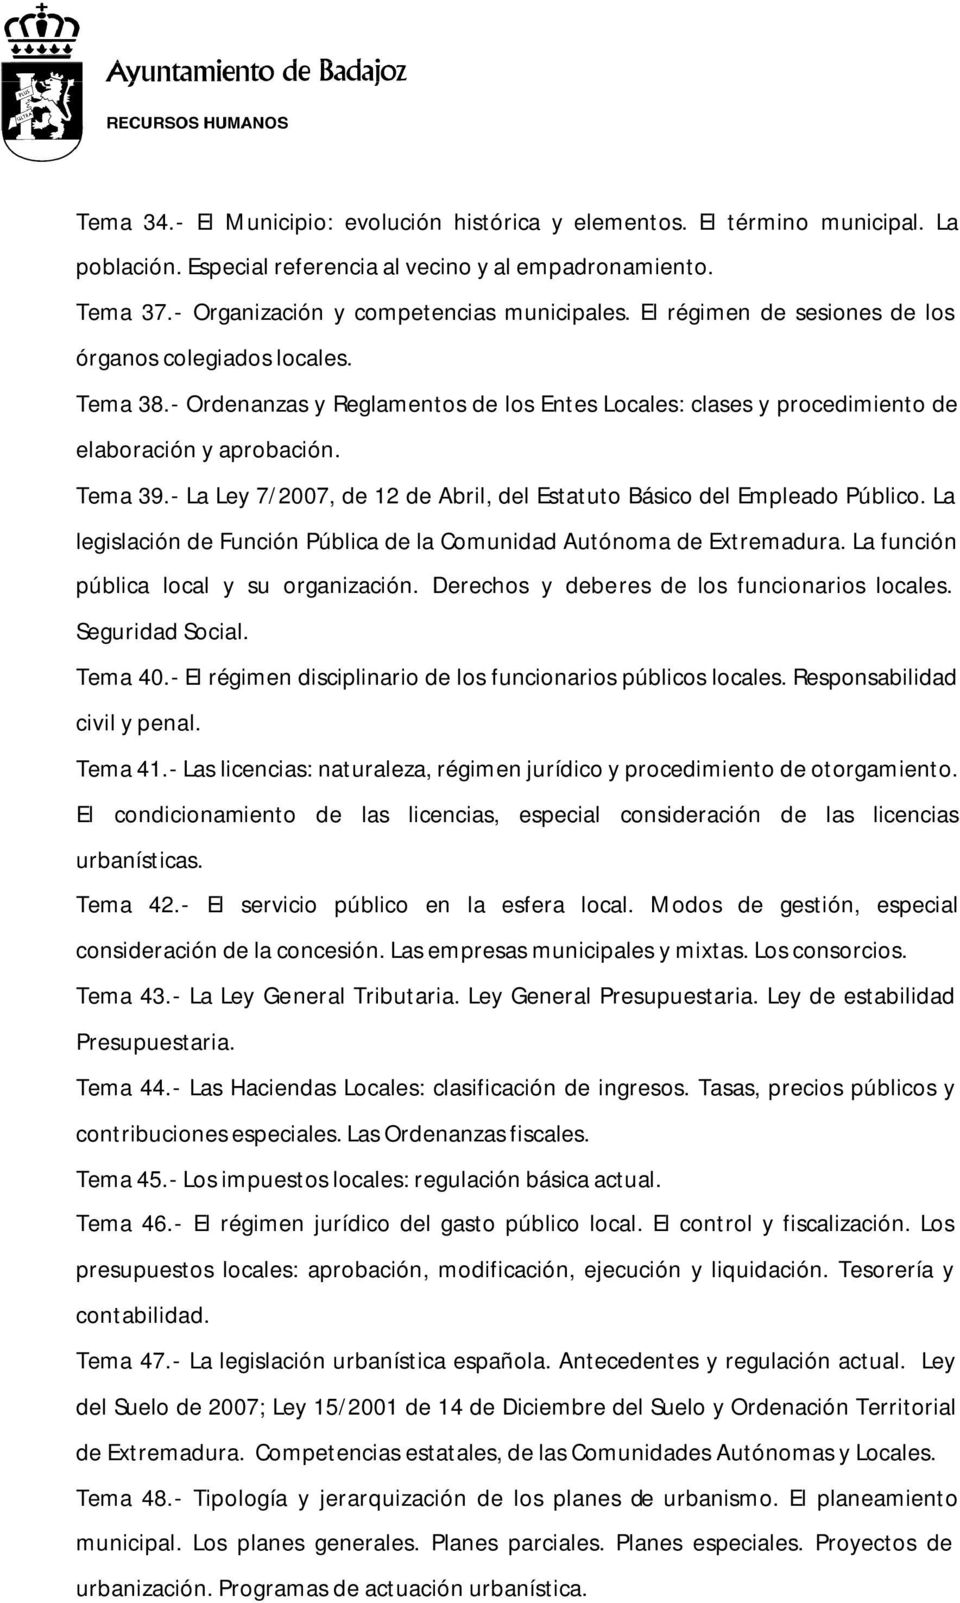 - La Ley 7/2007, de 12 de Abril, del Estatuto Básico del Empleado Público. La legislación de Función Pública de la Comunidad Autónoma de Extremadura. La función pública local y su organización.